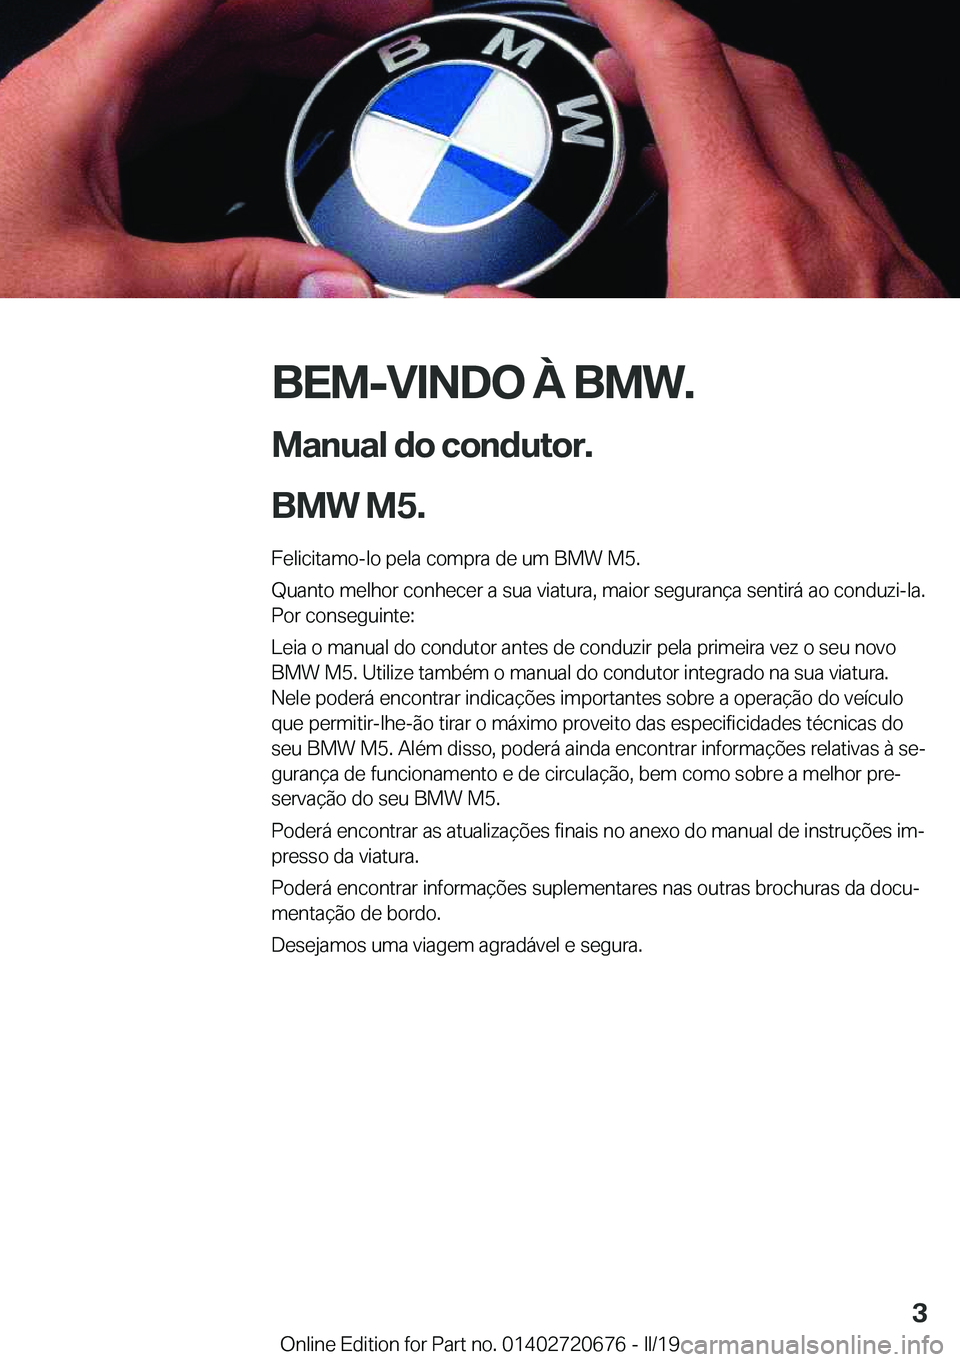 BMW M5 2019  Manual do condutor (in Portuguese) �B�E�M�-�V�I�N�D�O��À��B�M�W�.
�M�a�n�u�a�l��d�o��c�o�n�d�u�t�o�r�.
�B�M�W��M�5�. �F�e�l�i�c�i�t�a�m�o�-�l�o��p�e�l�a��c�o�m�p�r�a��d�e��u�m��B�M�W��M�5�.
�Q�u�a�n�t�o��m�e�l�h�o�r��c�o�